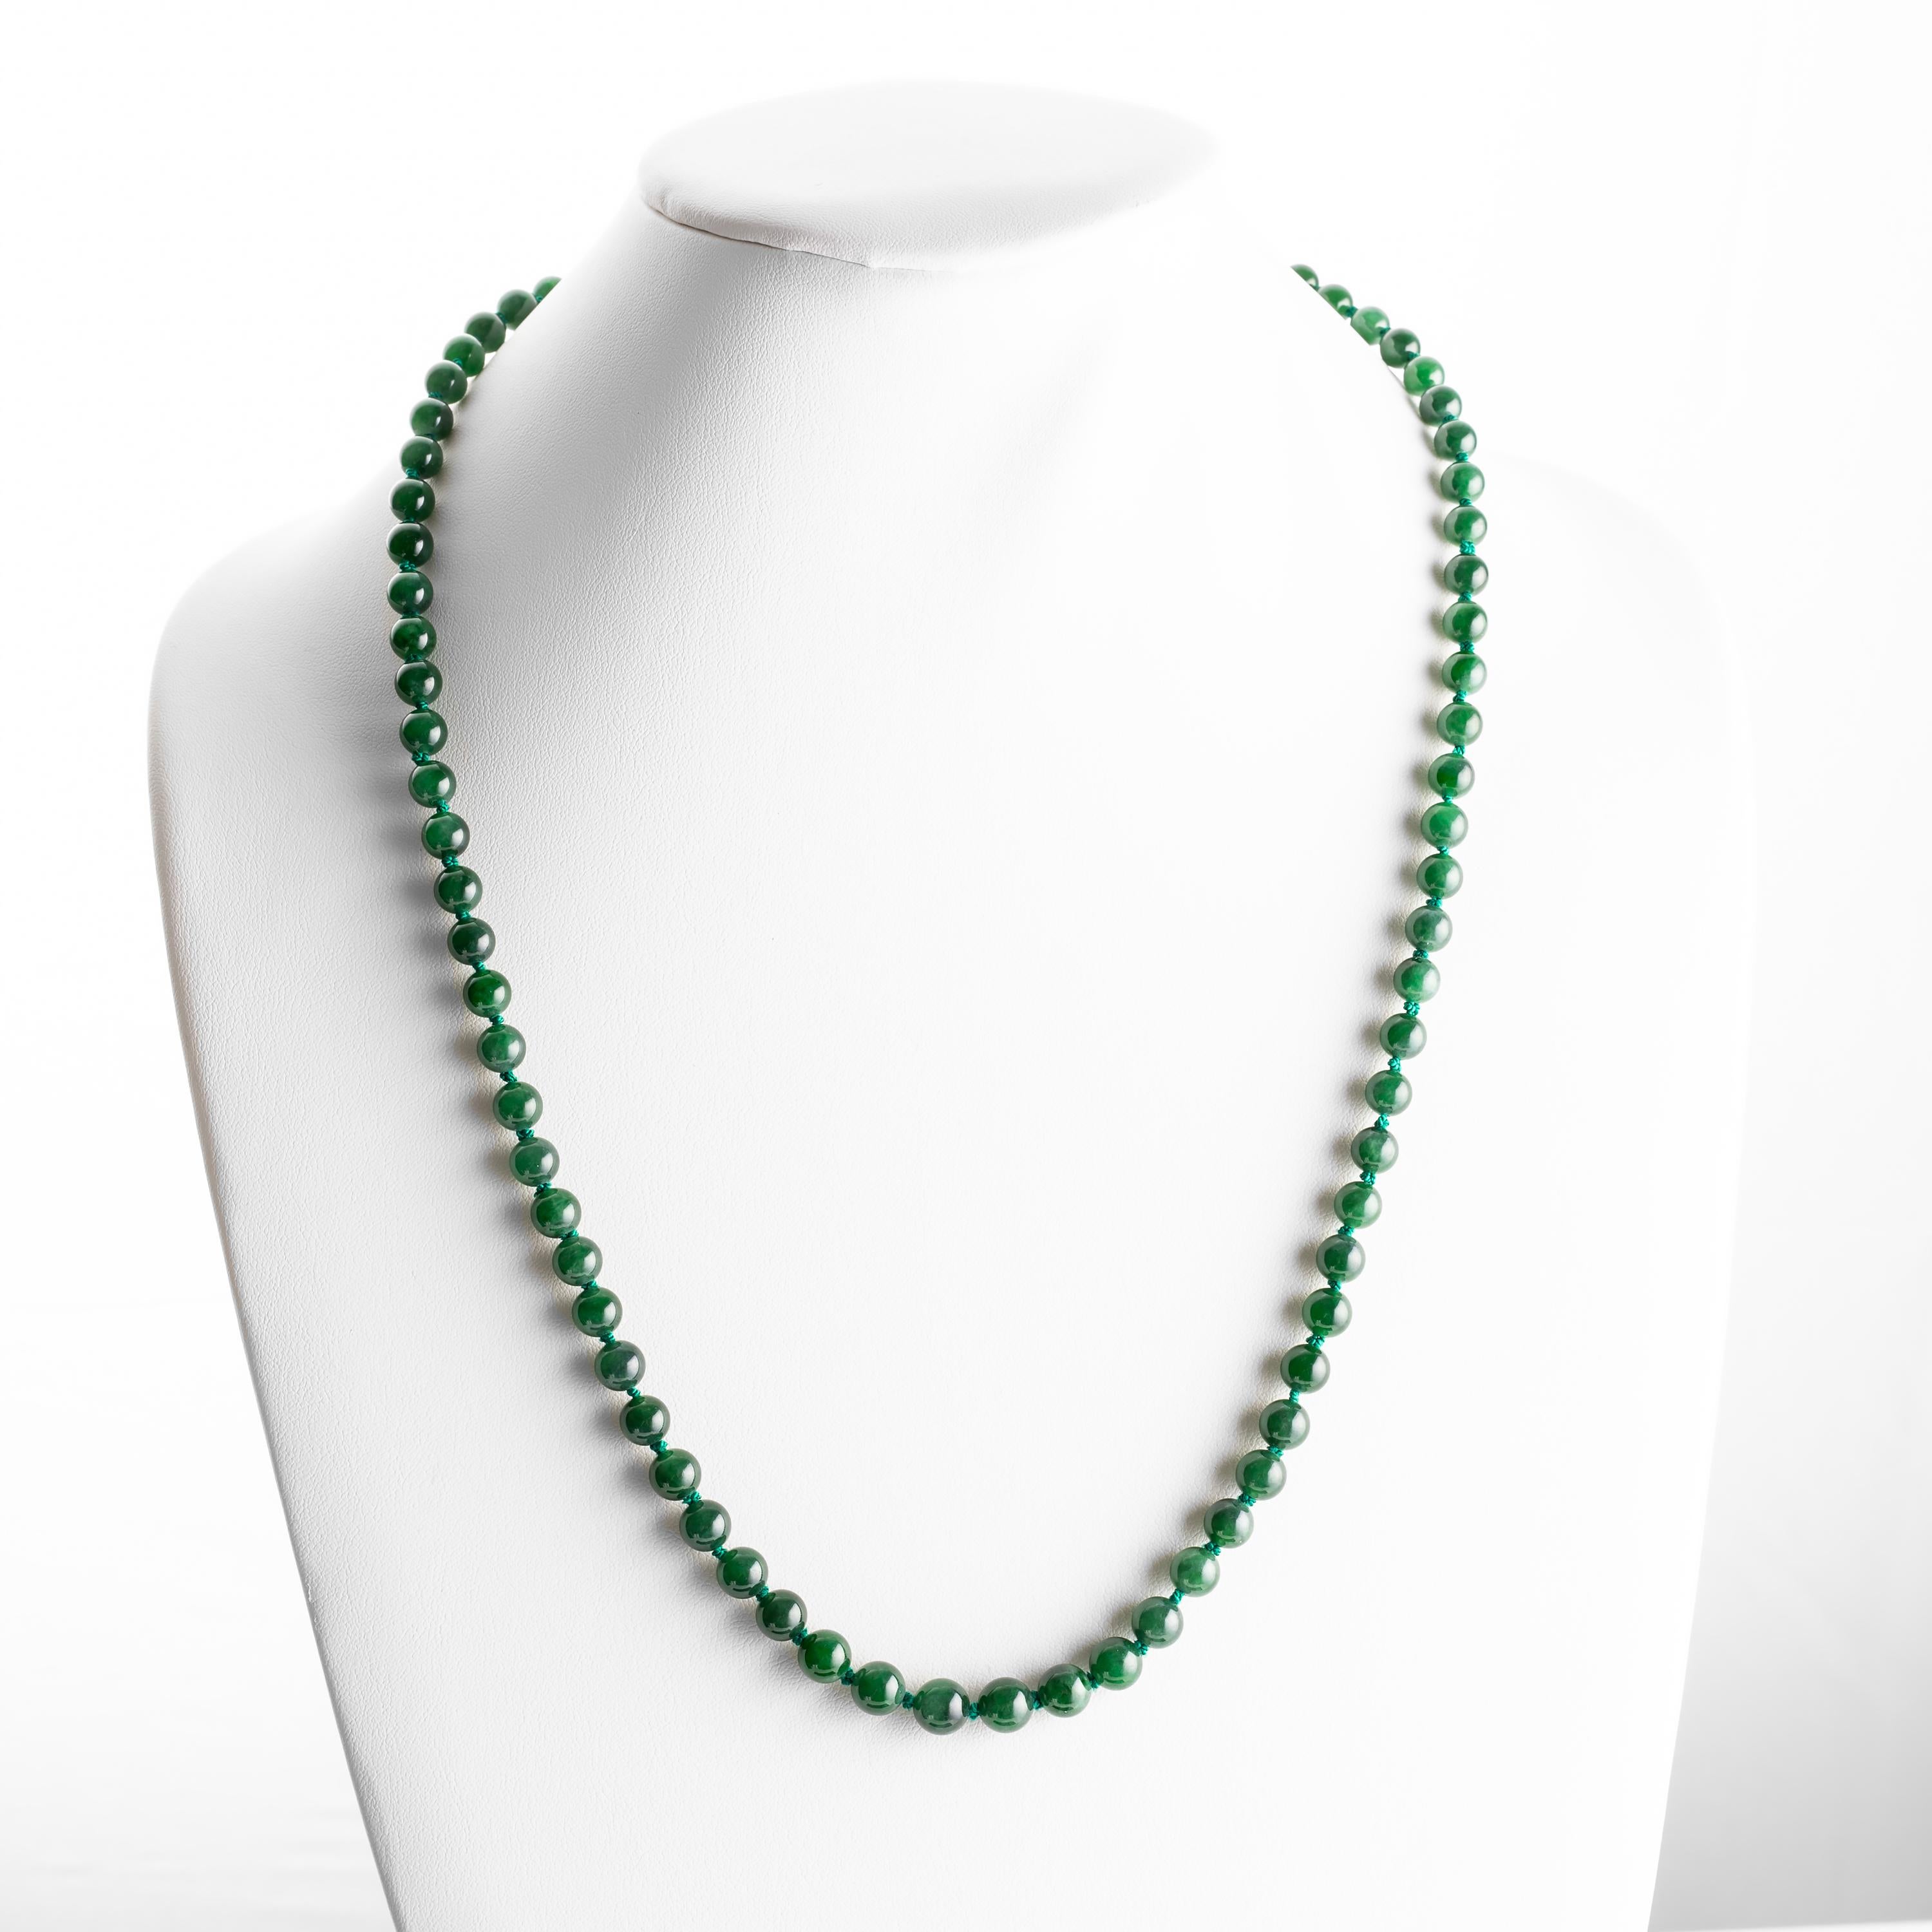 Women's or Men's Imperial Jadeite Jade Necklace Certified Untreated